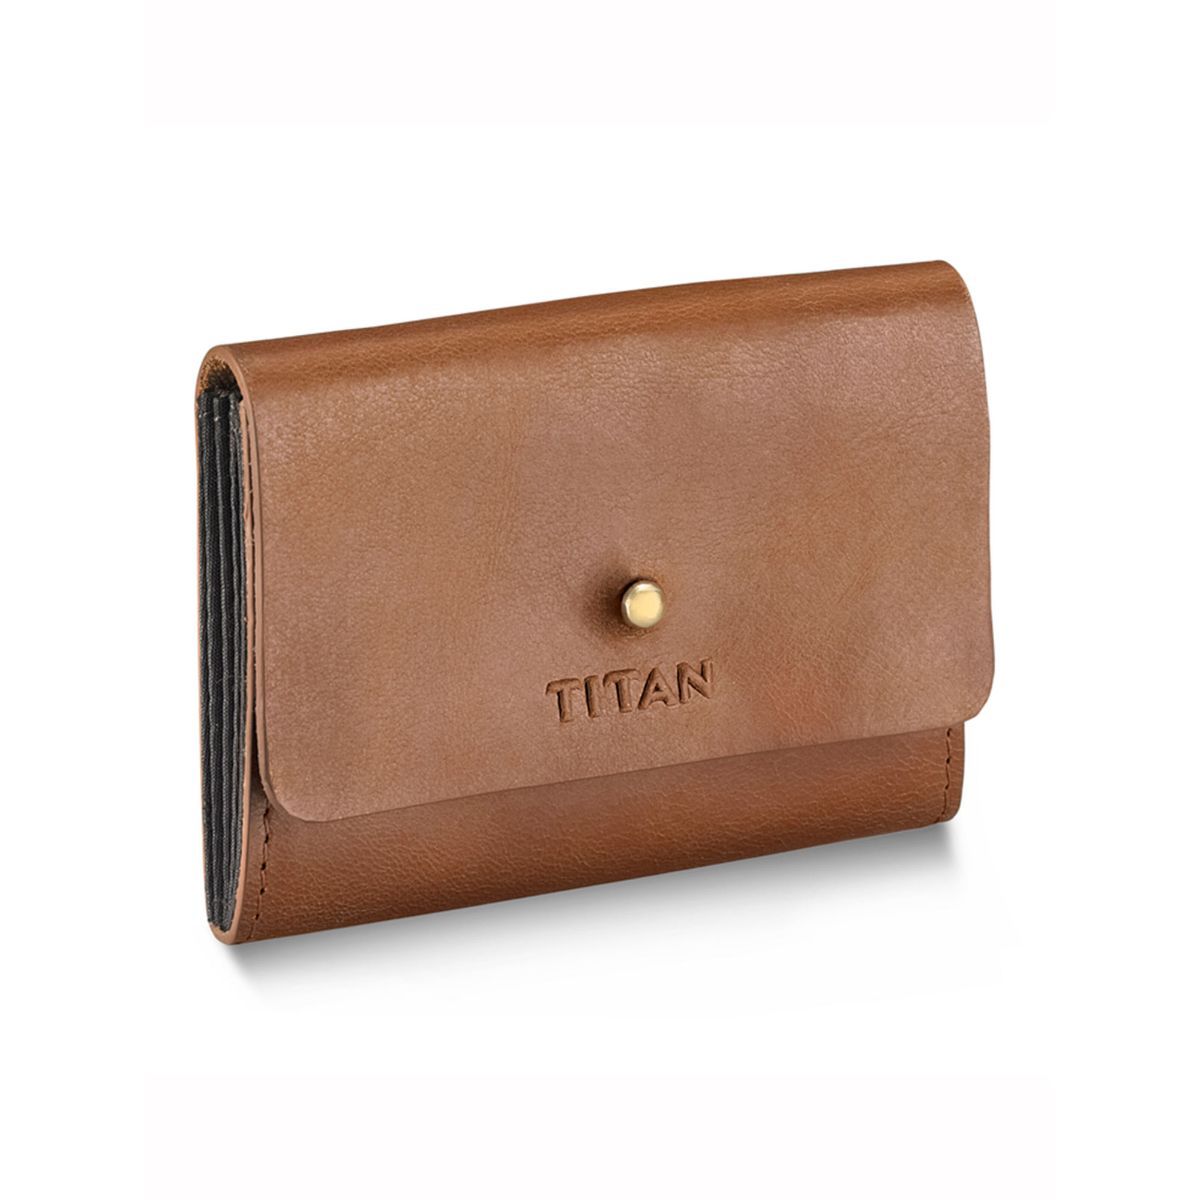 Buy Titan Men Navy Blue Leather Wallet - Wallets for Men 463424 | Myntra